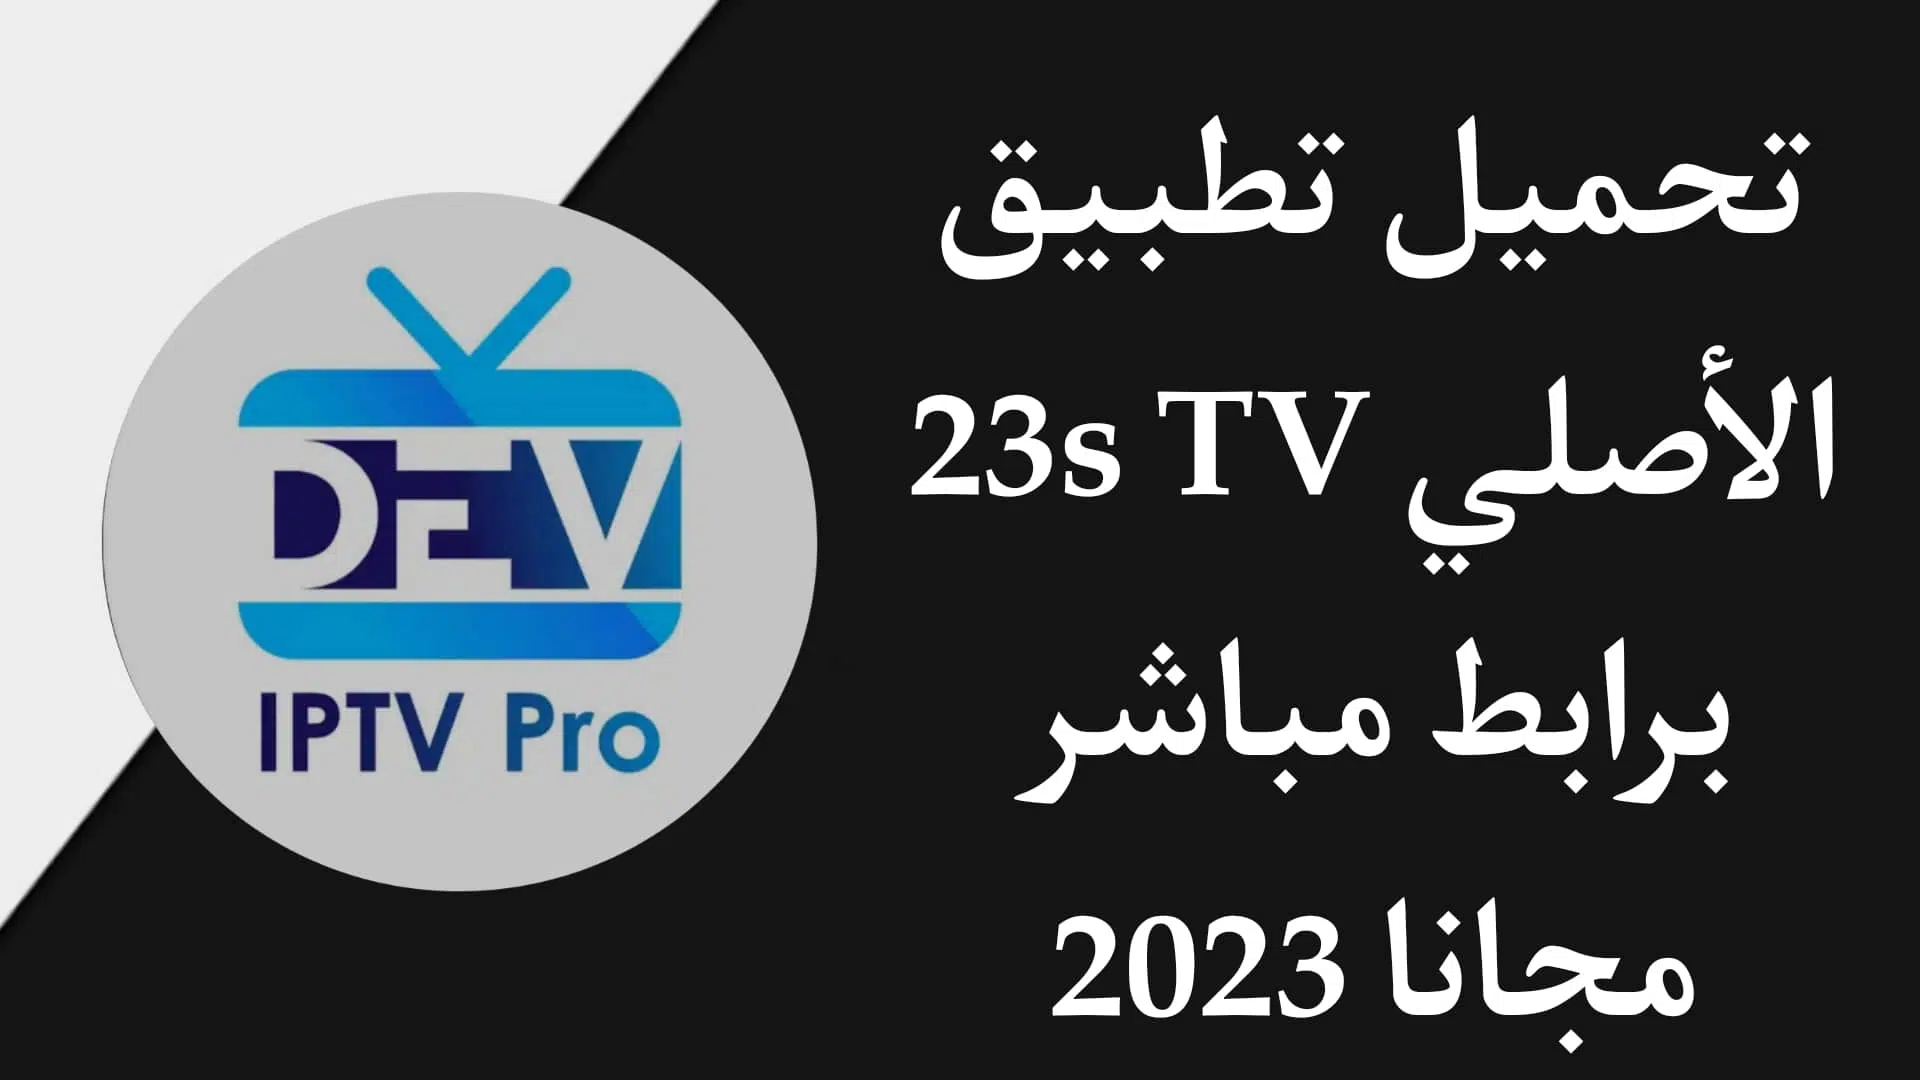 تحميل تطبيق 23s tv iptv etv html الاصلي برابط مباشر للاندرويد